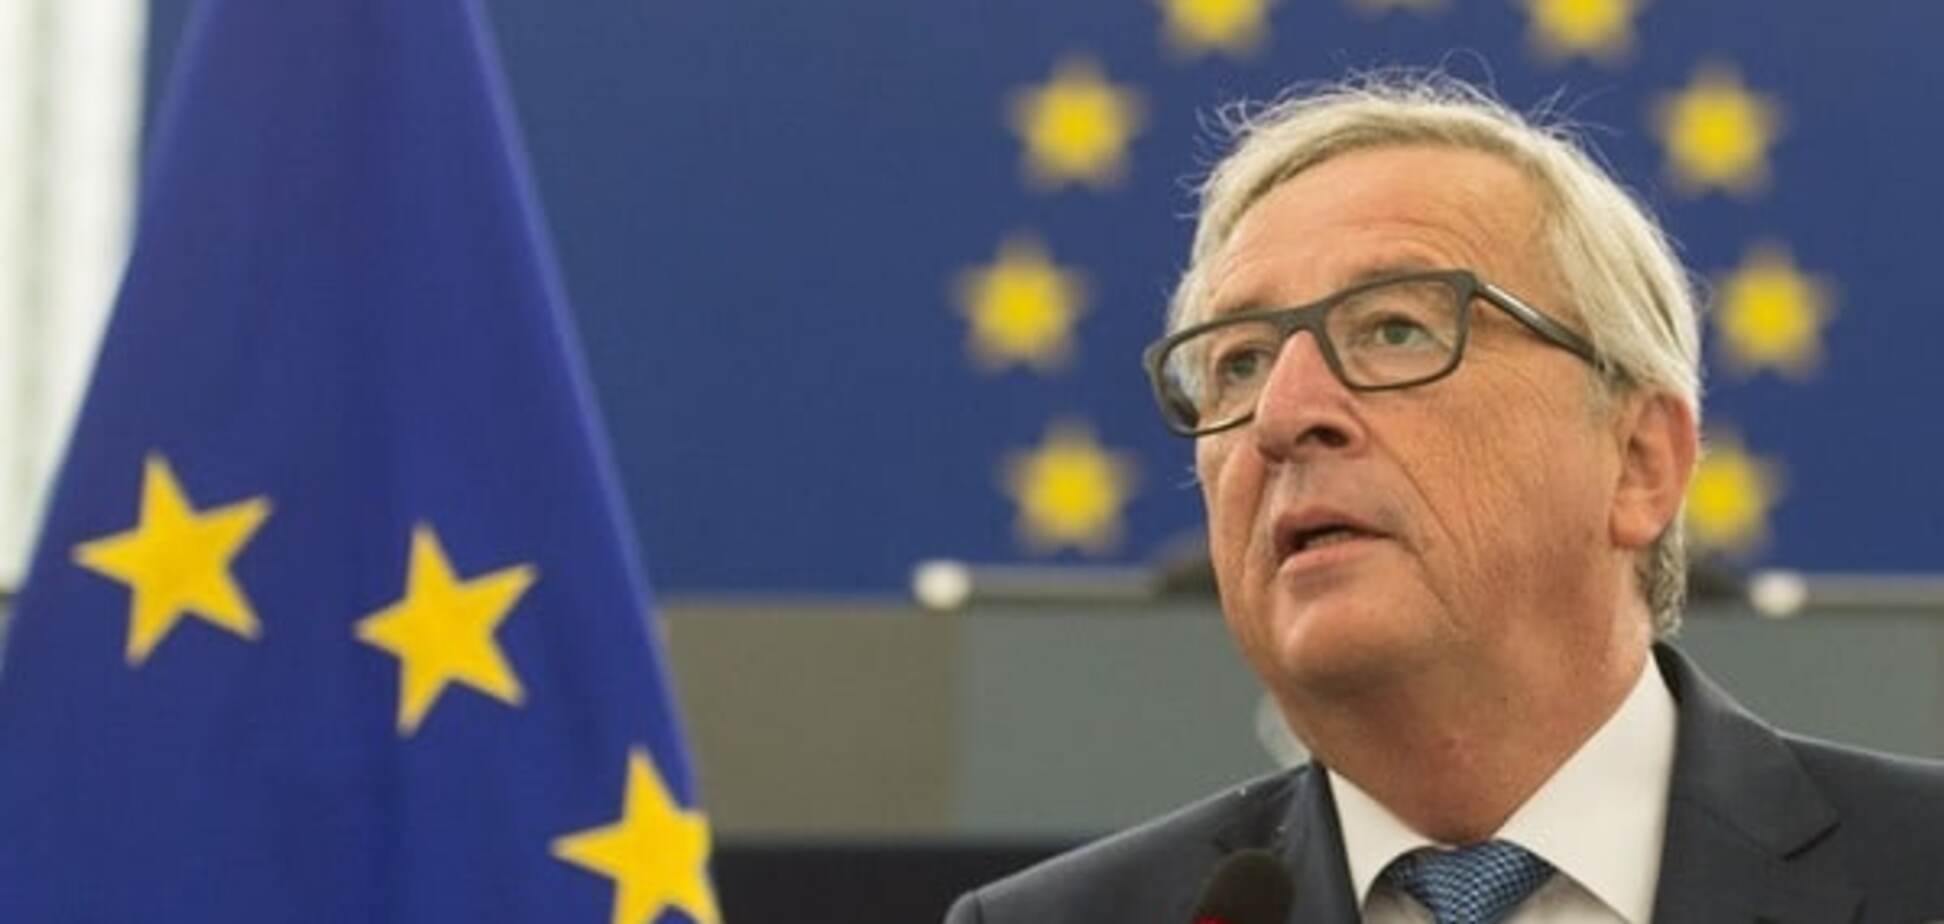 ЕС должен силой защищать европейские ценности – Юнкер 